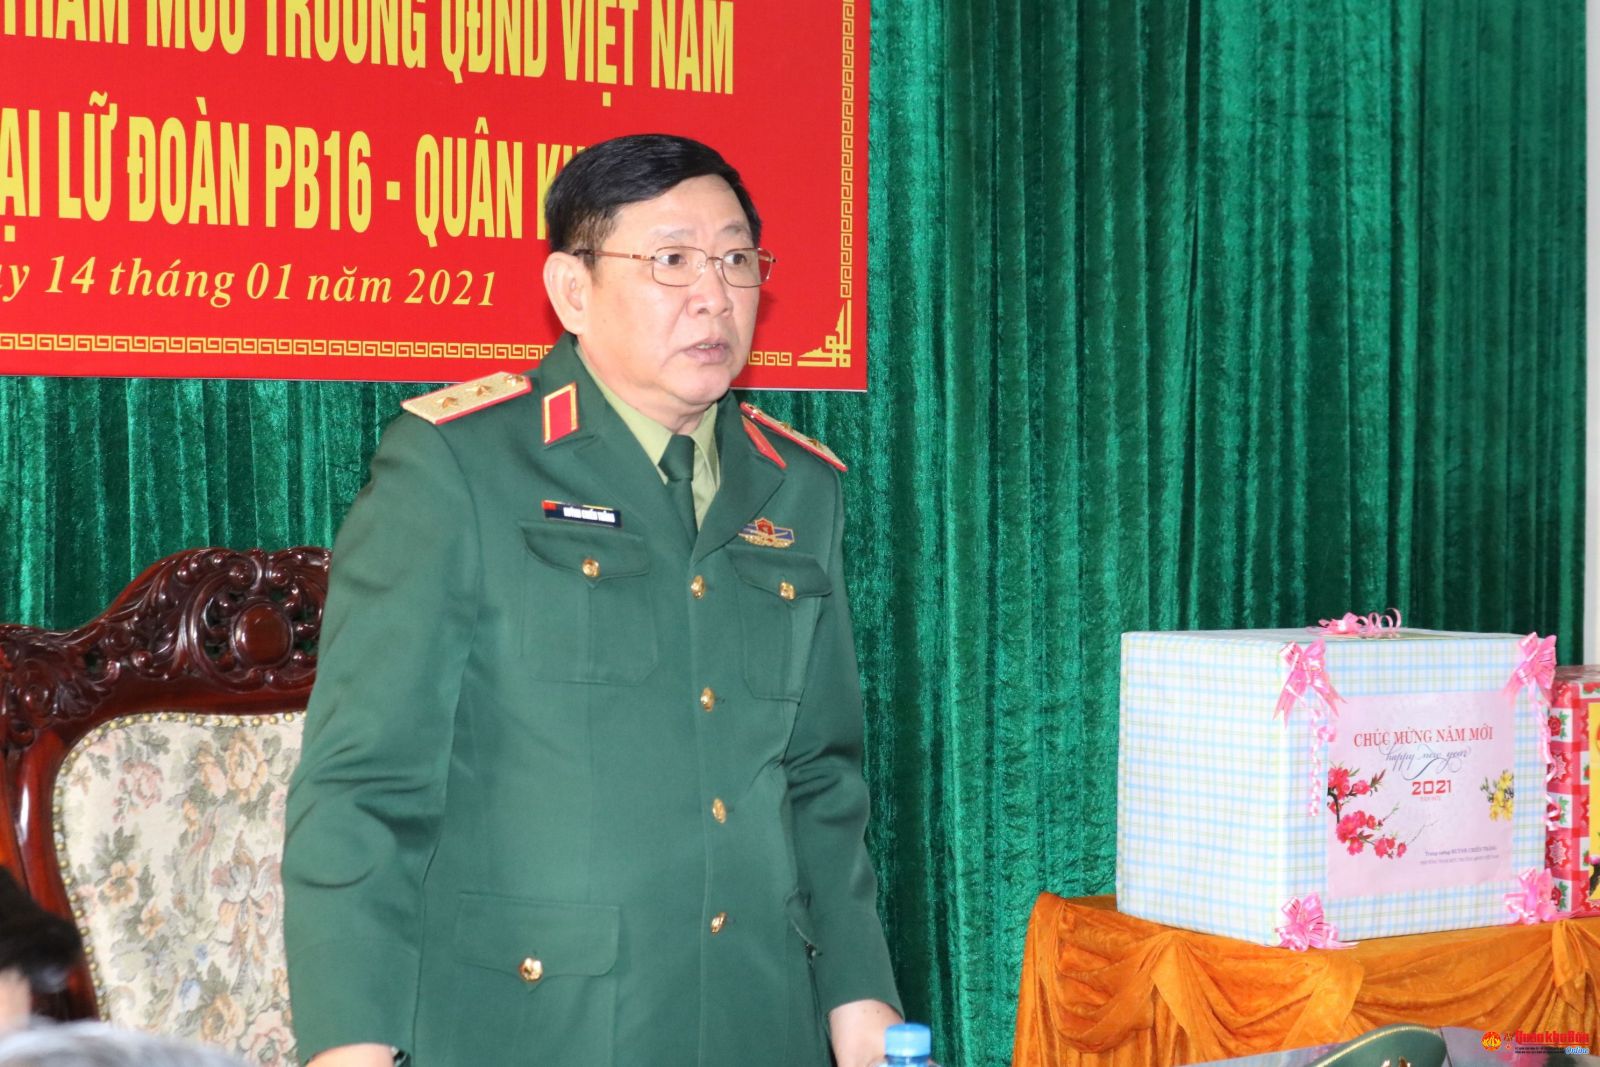 Chân dung Phó tổng Tham mưu trưởng Huỳnh Chiến Thắng được thăng hàm Thượng tướng-11